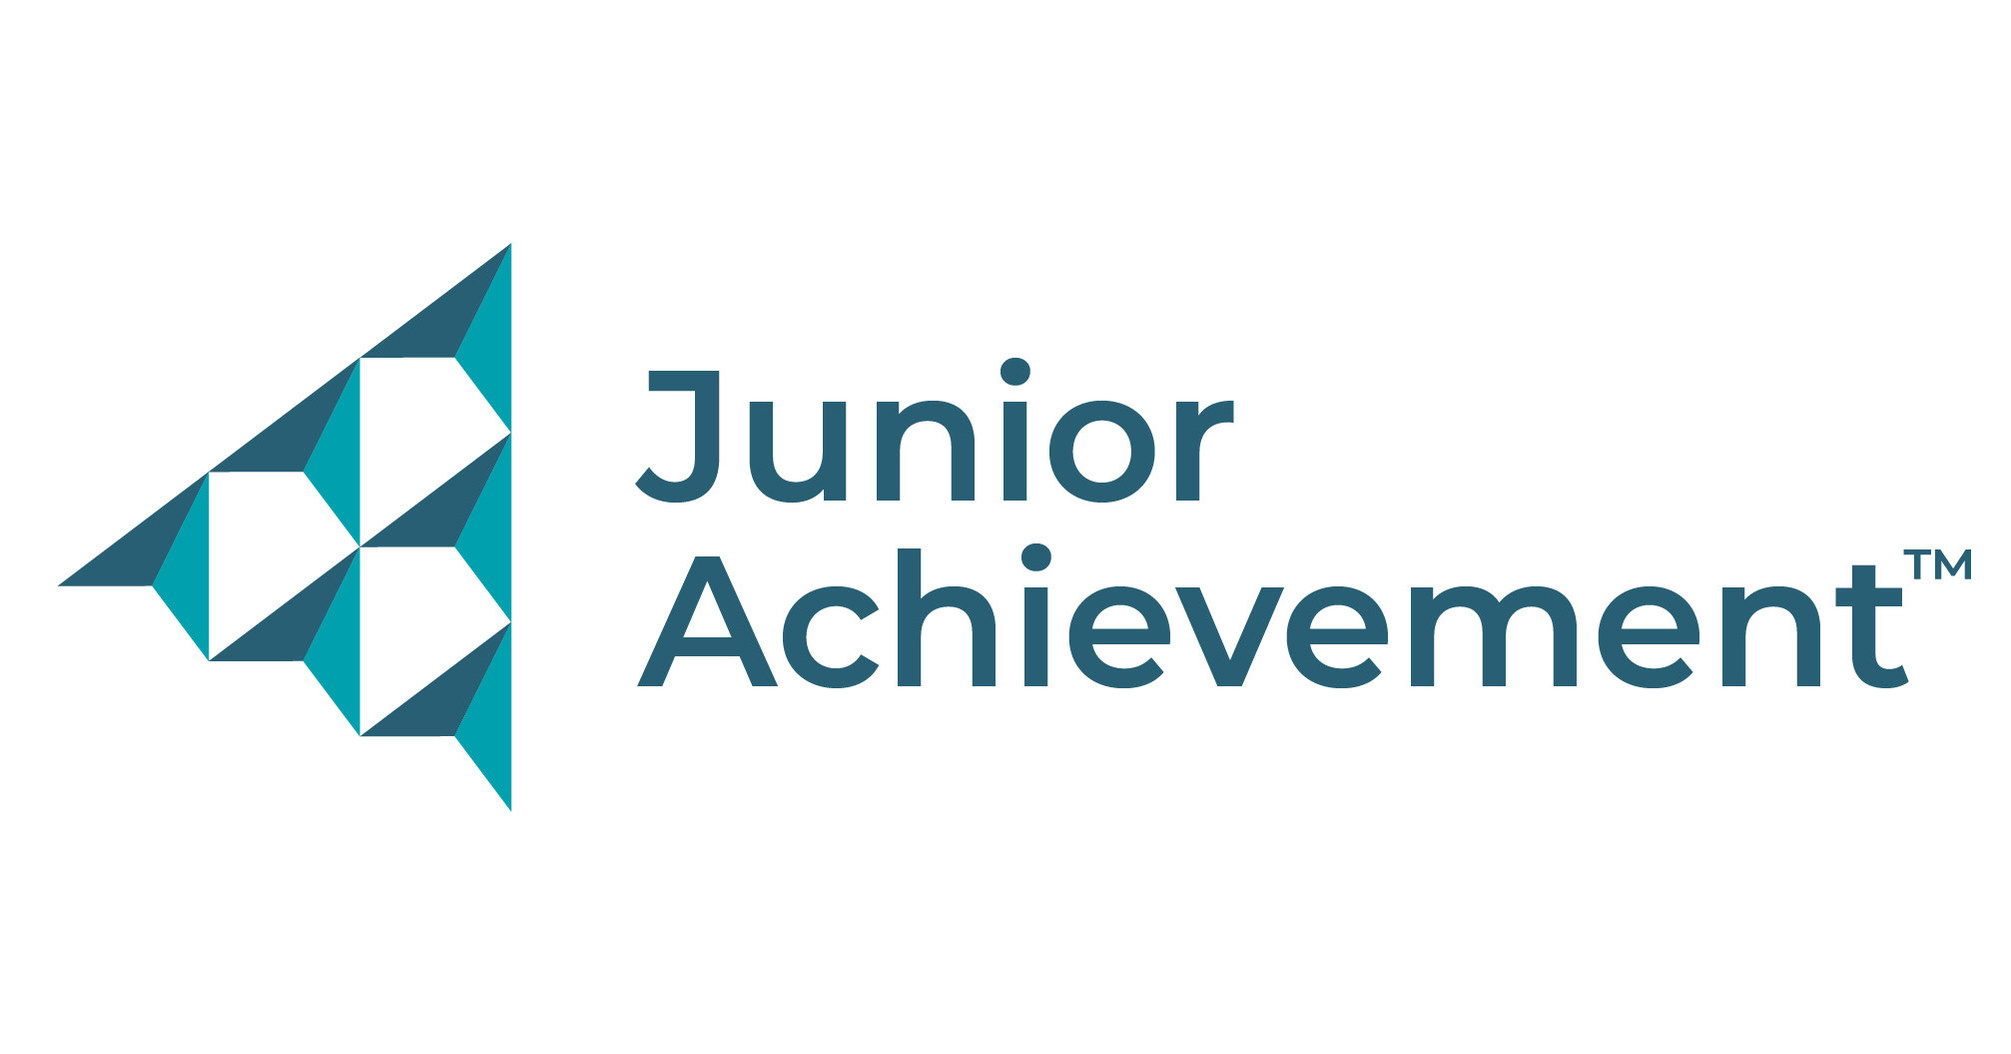 Junior Achievement USA